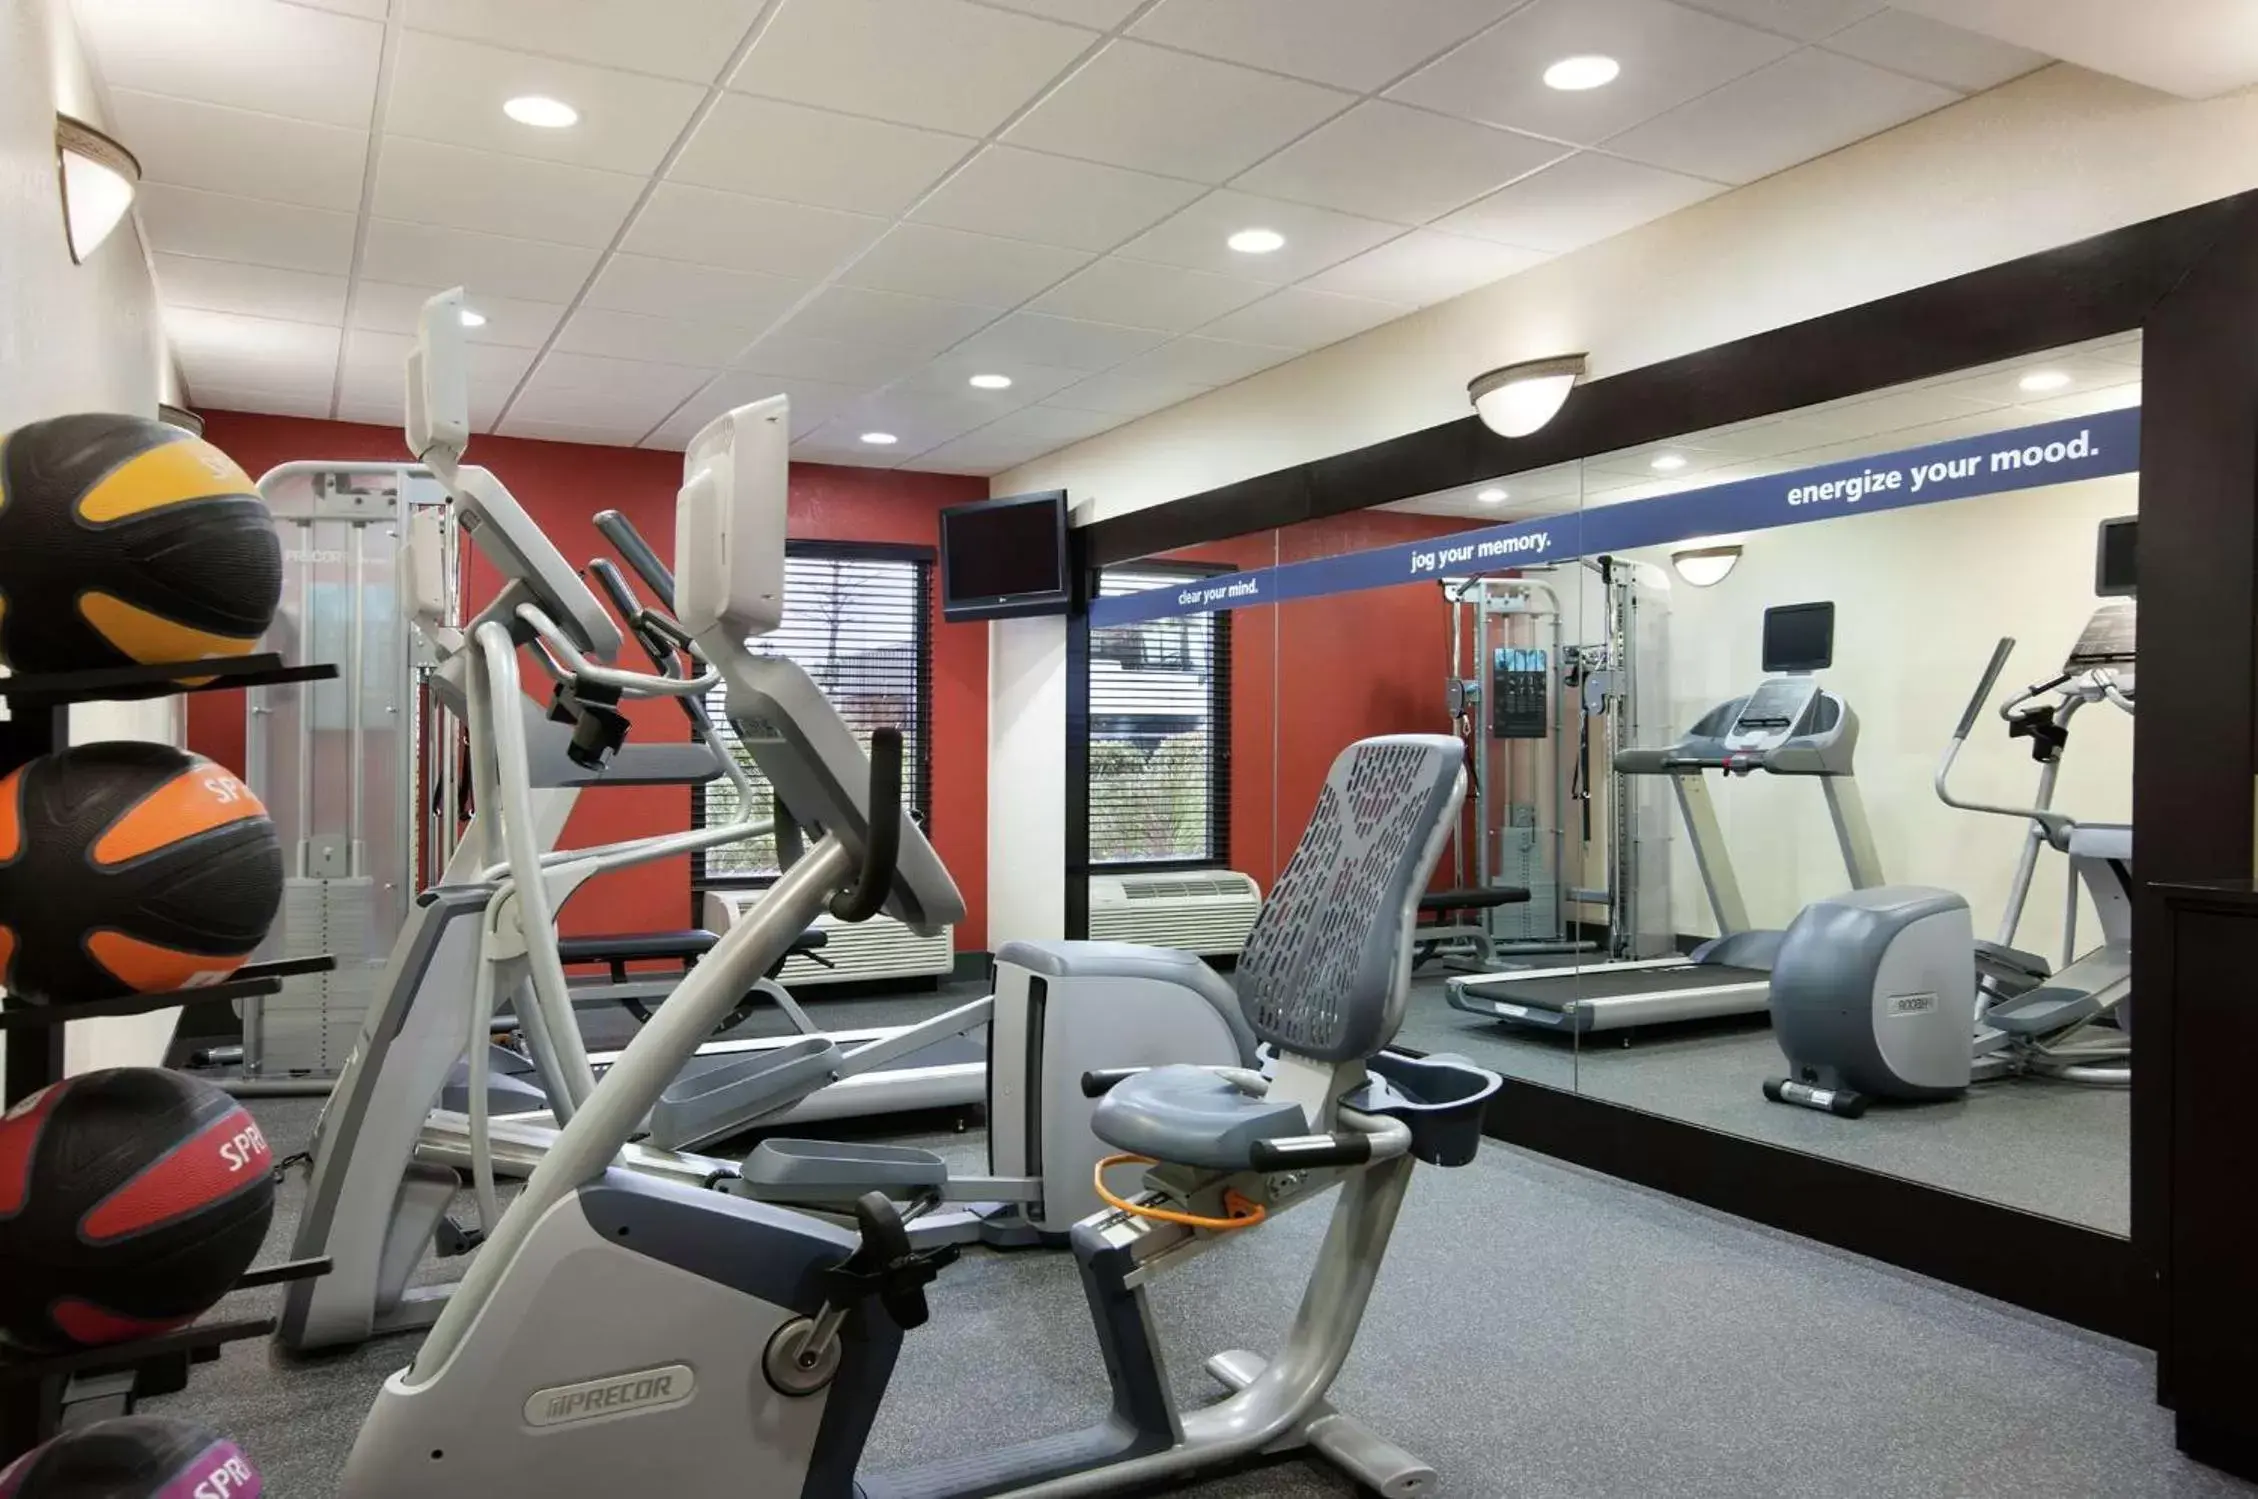 Fitness centre/facilities, Fitness Center/Facilities in Hampton Inn Slidell